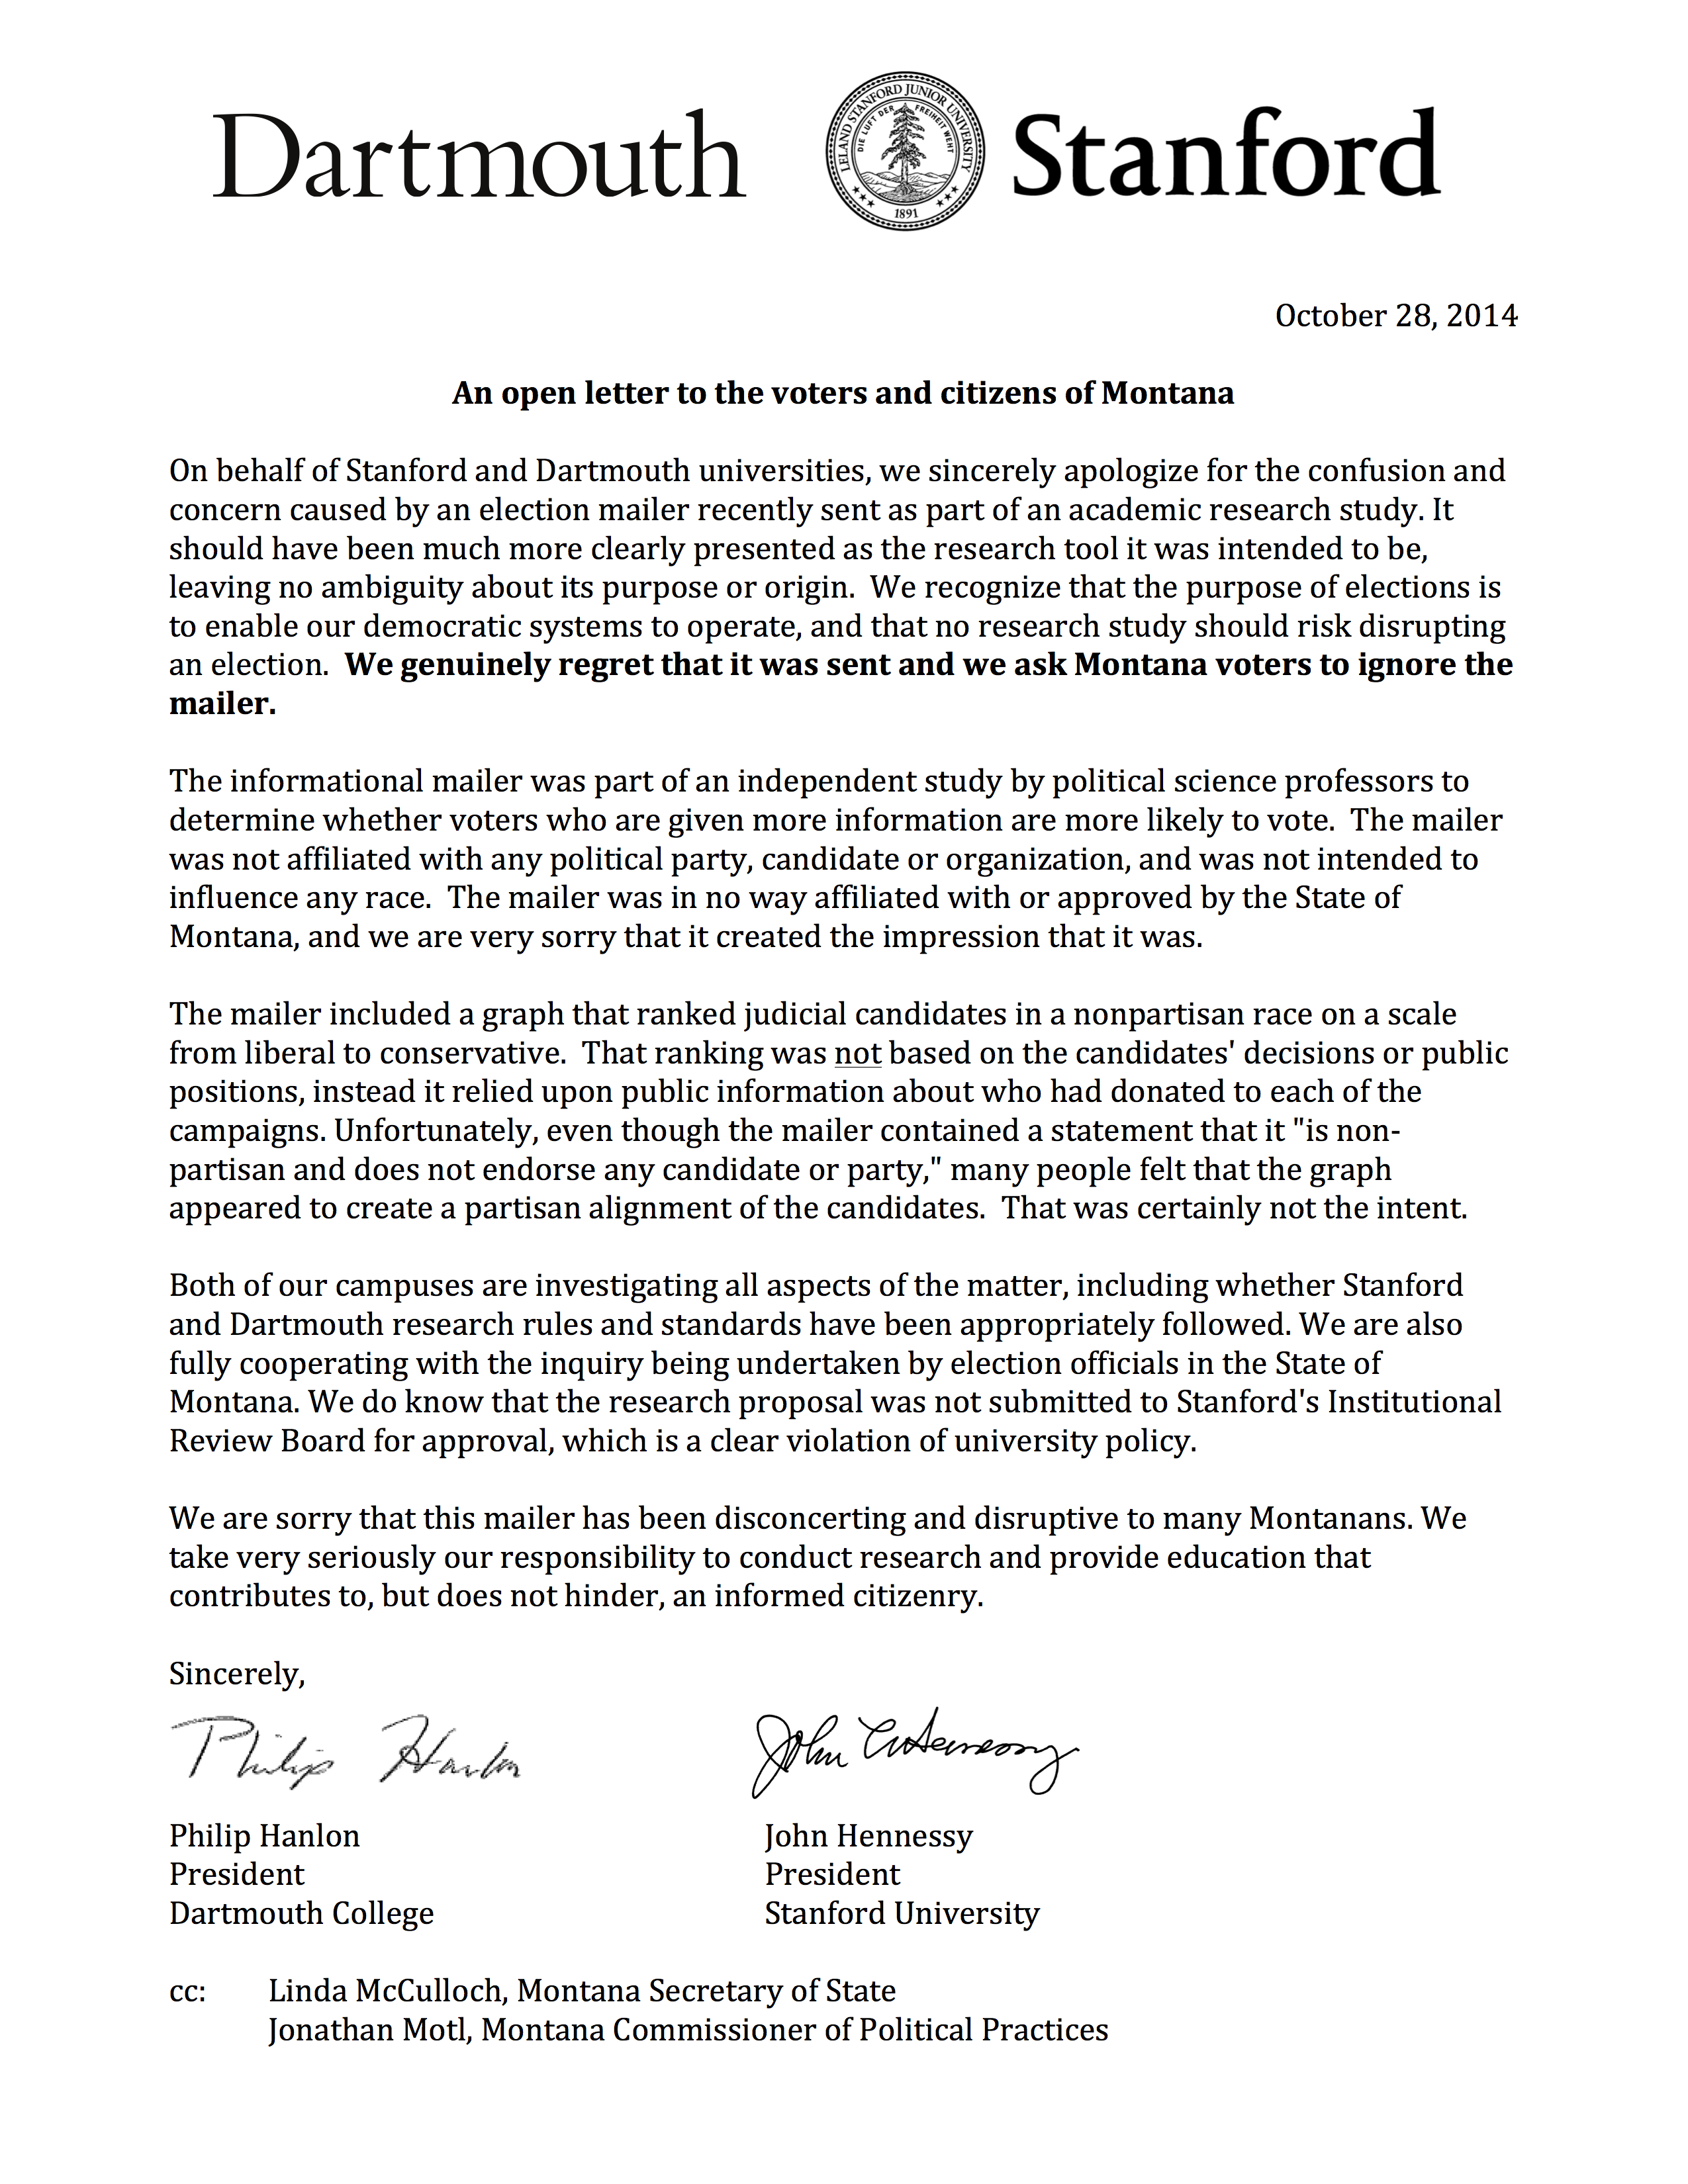 Фигура 6.11: Писмо за извинение, изпратено на 102,780 регистрирани гласоподаватели в Монтана, които са получили писмото, показано на фигура 6.10. Писмото беше изпратено от президентите на Дартмут и Станфорд - университетите, които назначиха изследователите, които изпратиха писмото. Възпроизведено от Motl (2015).